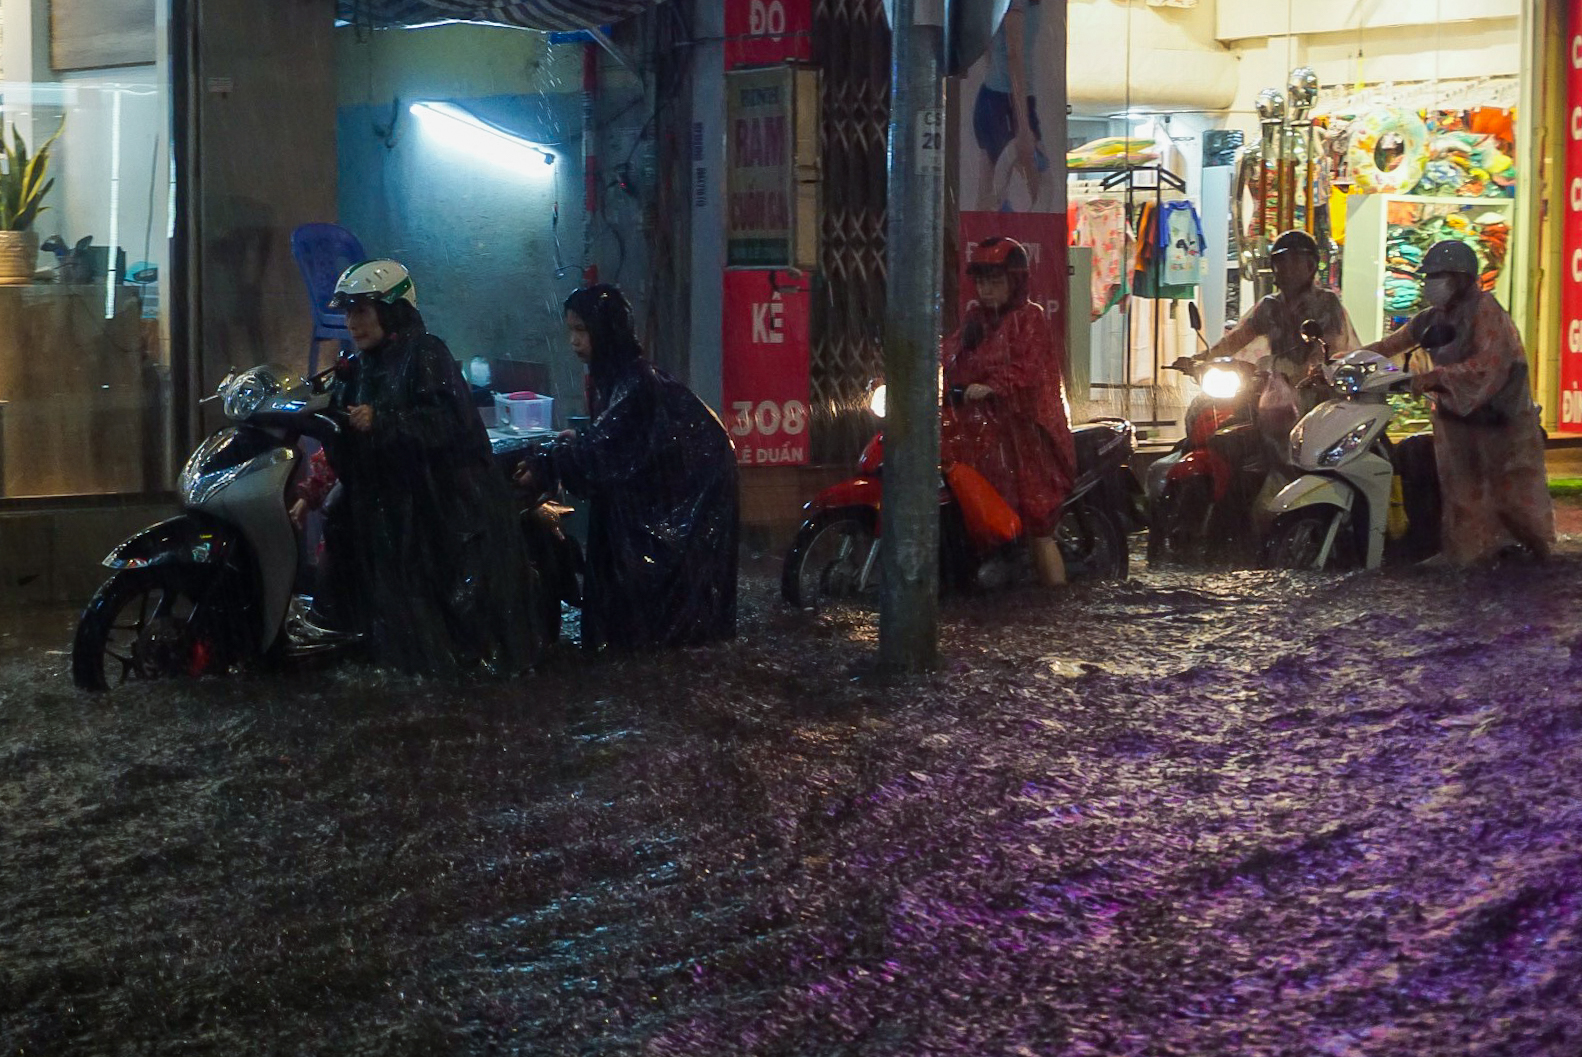 Đường phố Đà Nẵng ngập cục bộ sau mưa lớn, người dân chật vật lội nước về nhà - Ảnh 7.